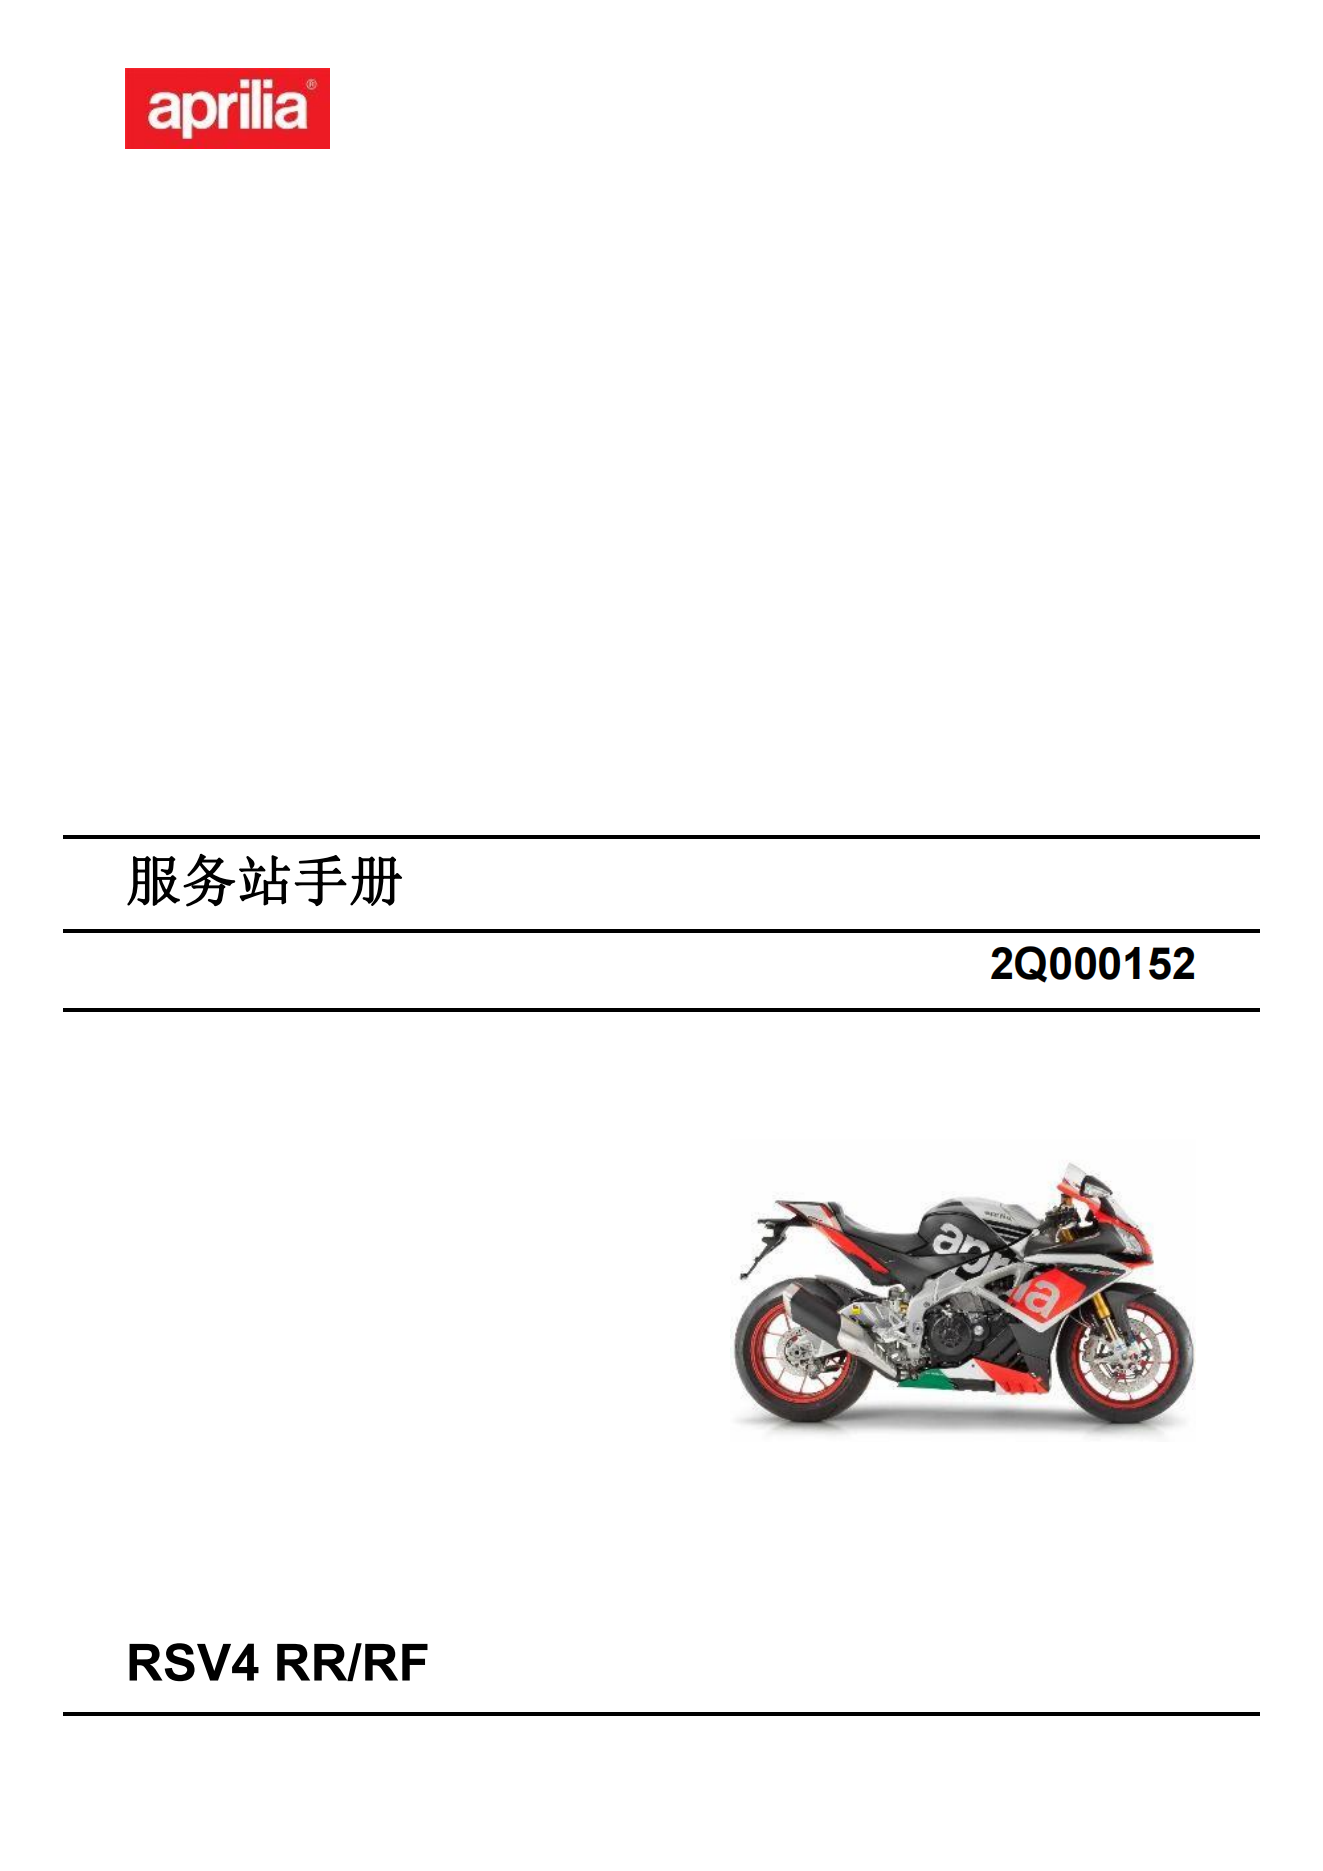 简体中文2015年阿普利亚rsv4rr-rf维修手册插图